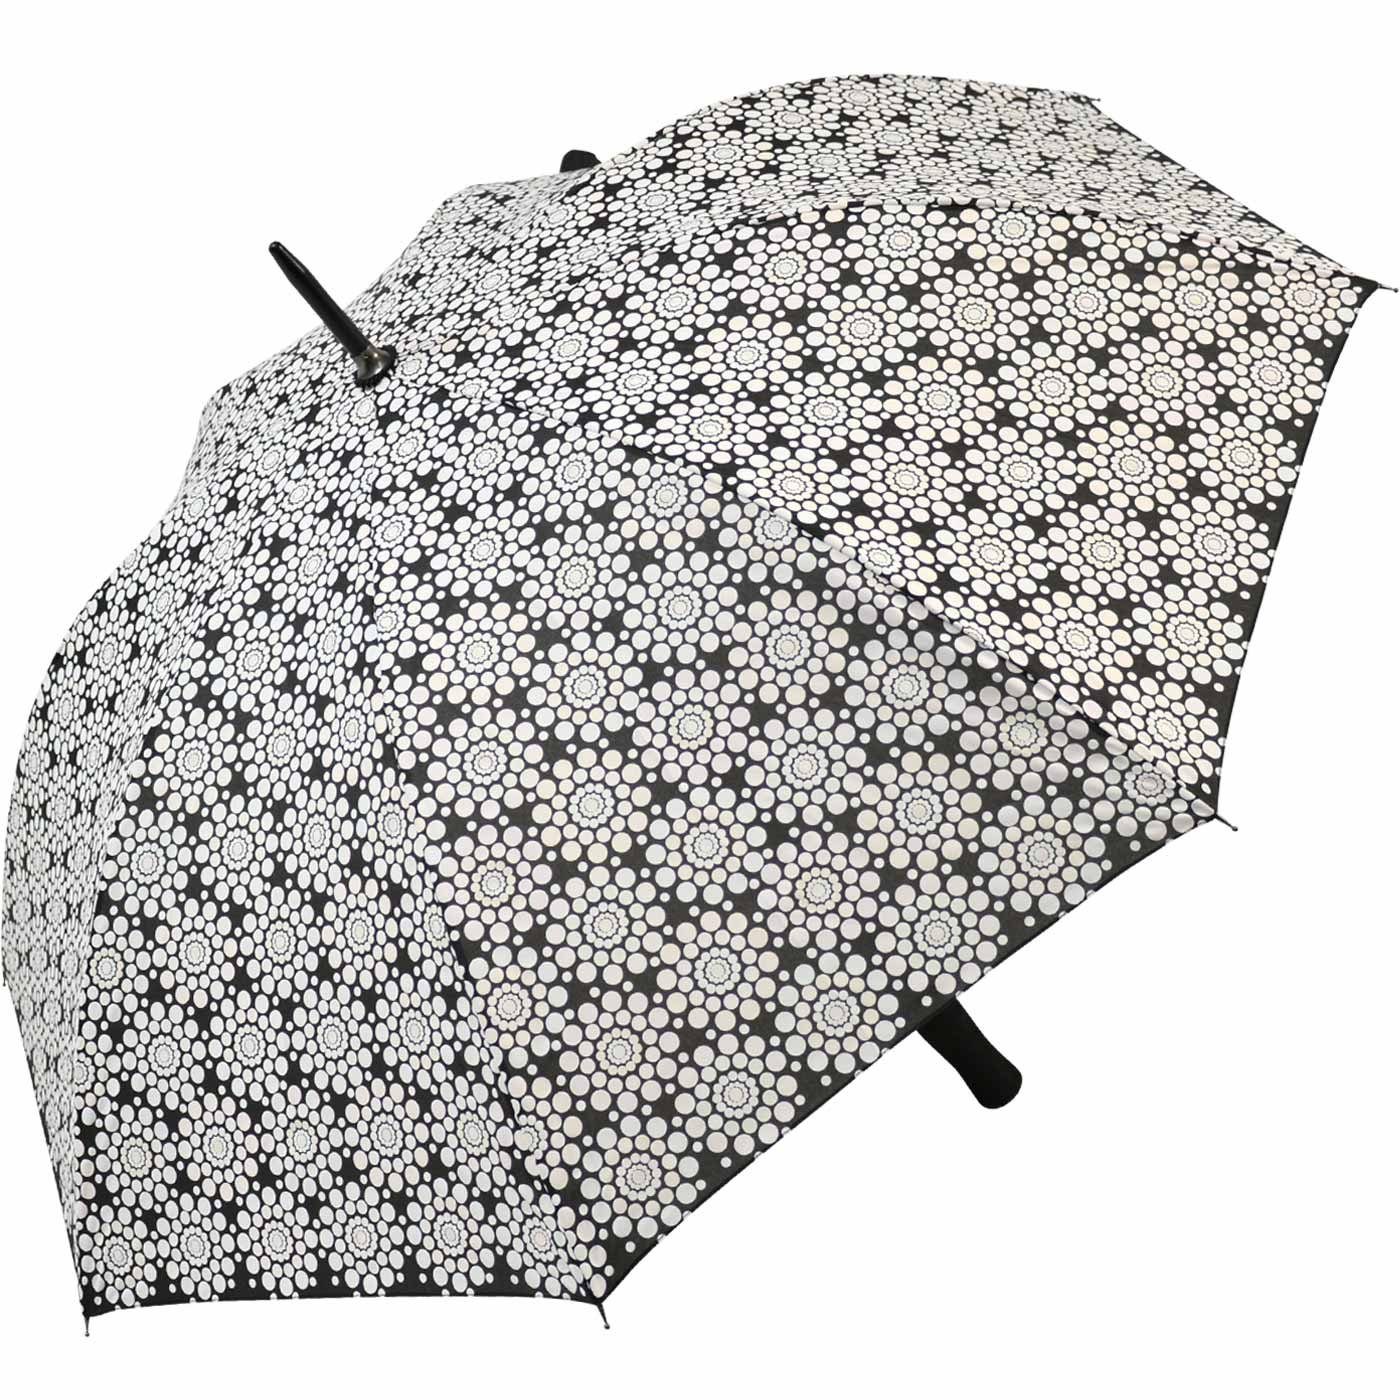 - Schirm wird zeigt nass Wetprint Nässe er wahres Gesicht der Langregenschirm sein bei Blumen, Impliva Farbwechsel wenn